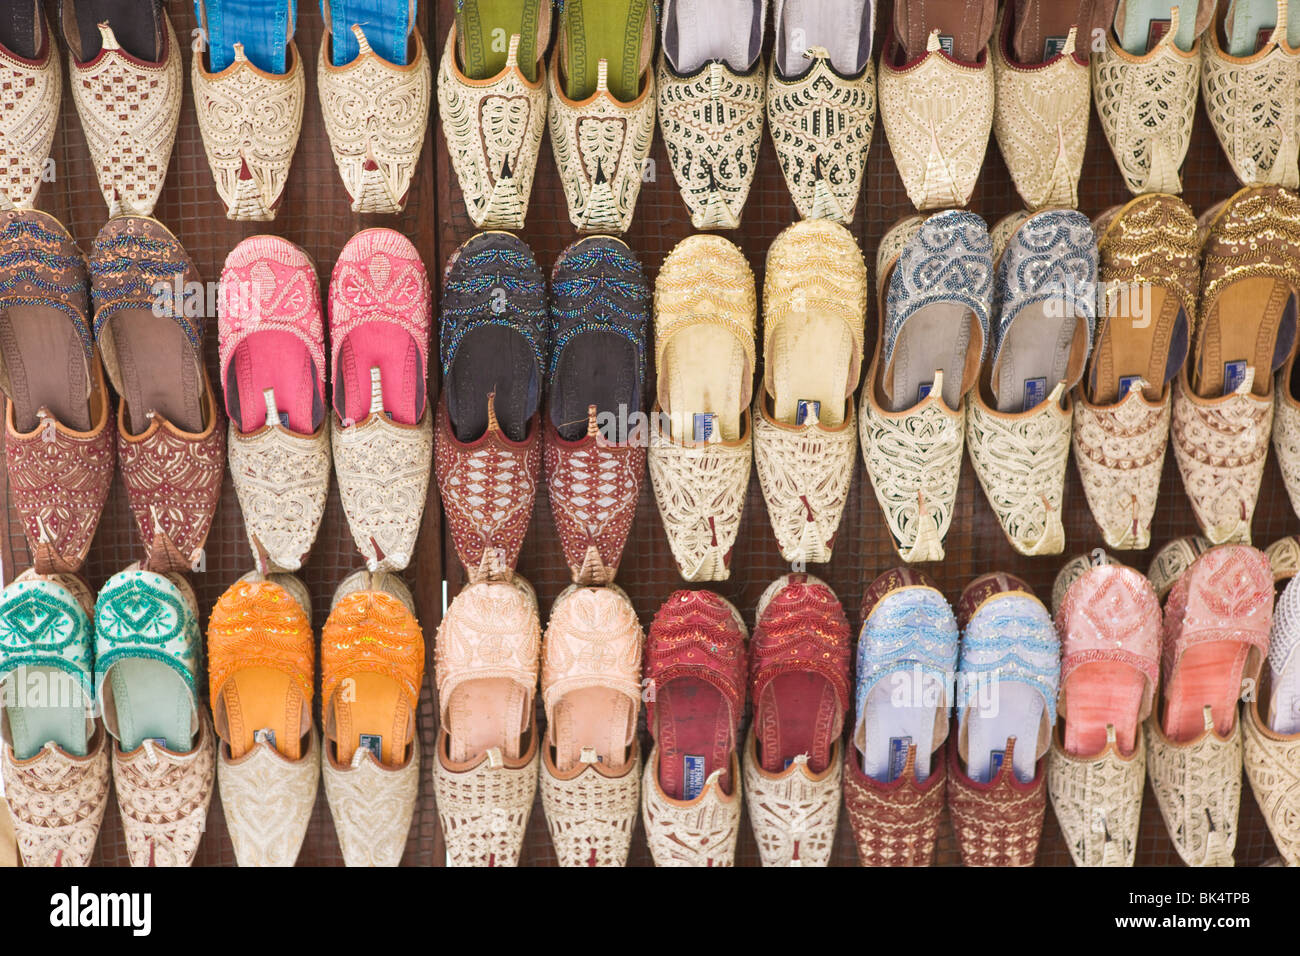 Rizado árabe tradicional vetado zapatillas, Deira, Dubai, Emiratos Árabes Unidos, Oriente Medio Foto de stock